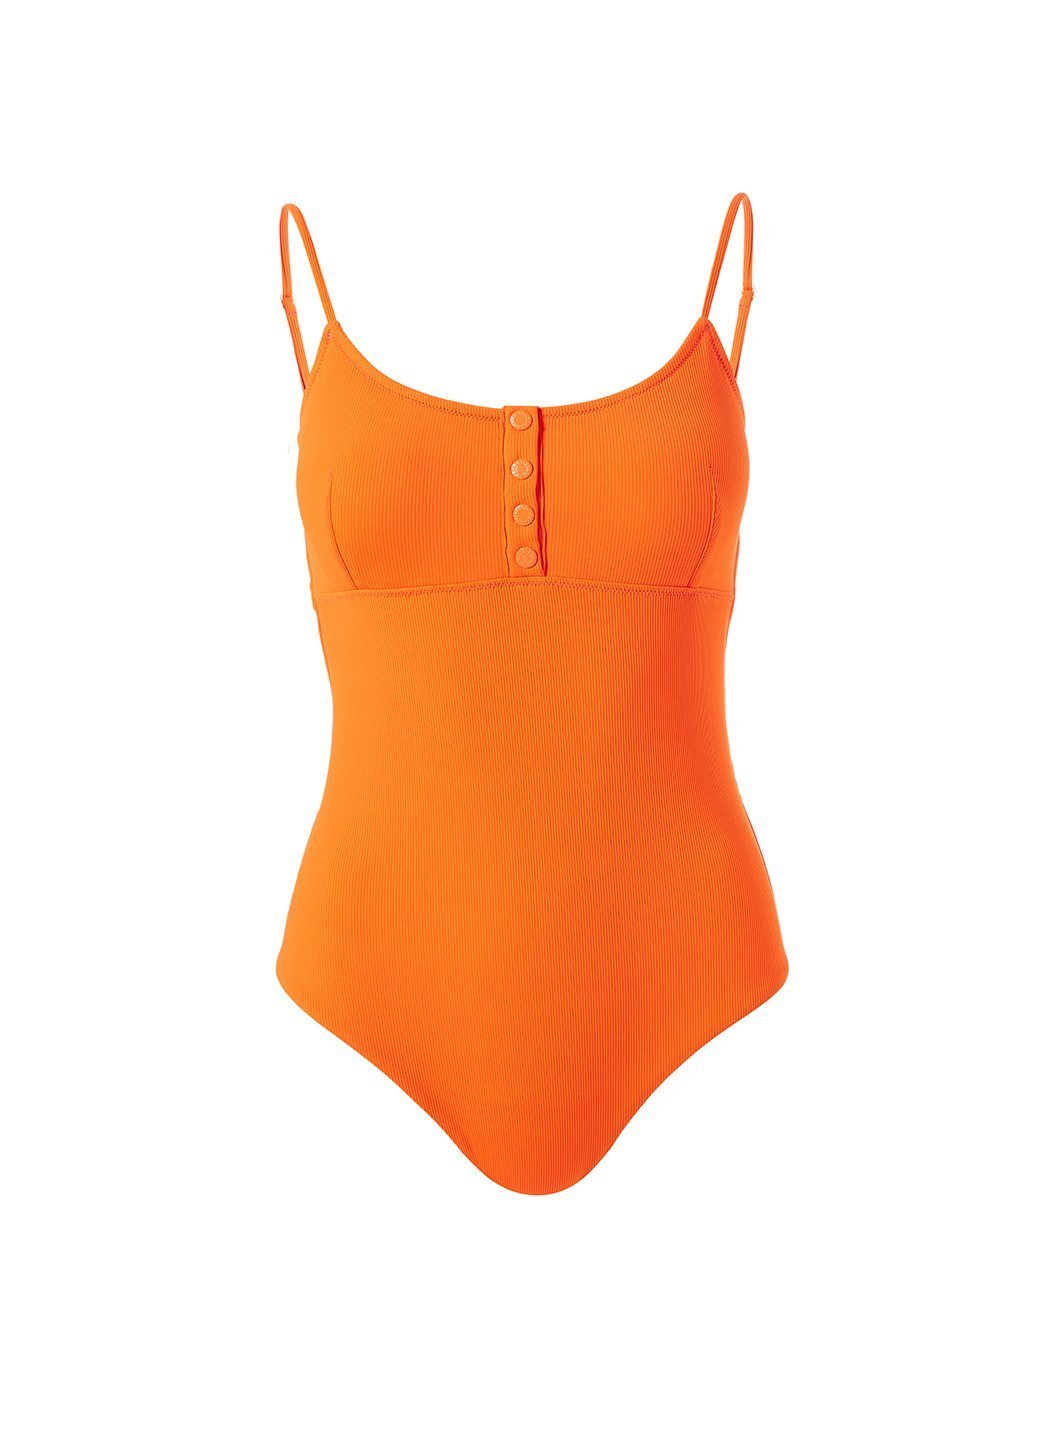 Calabasas Ribbed Papaya Swimsuit Cutout 